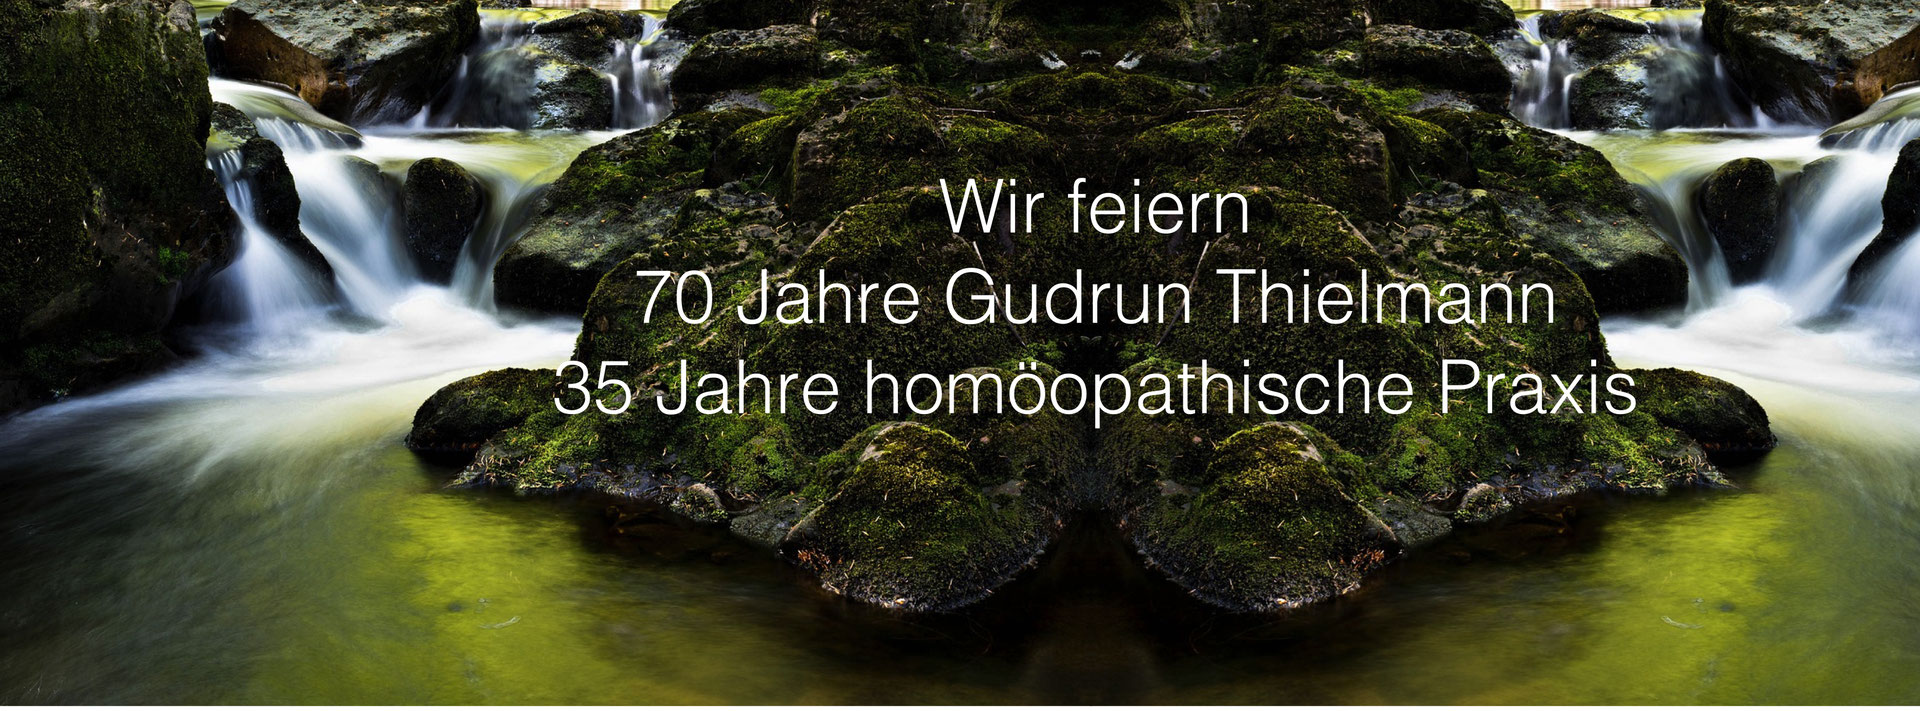 (c) Gudrun-thielmann.de